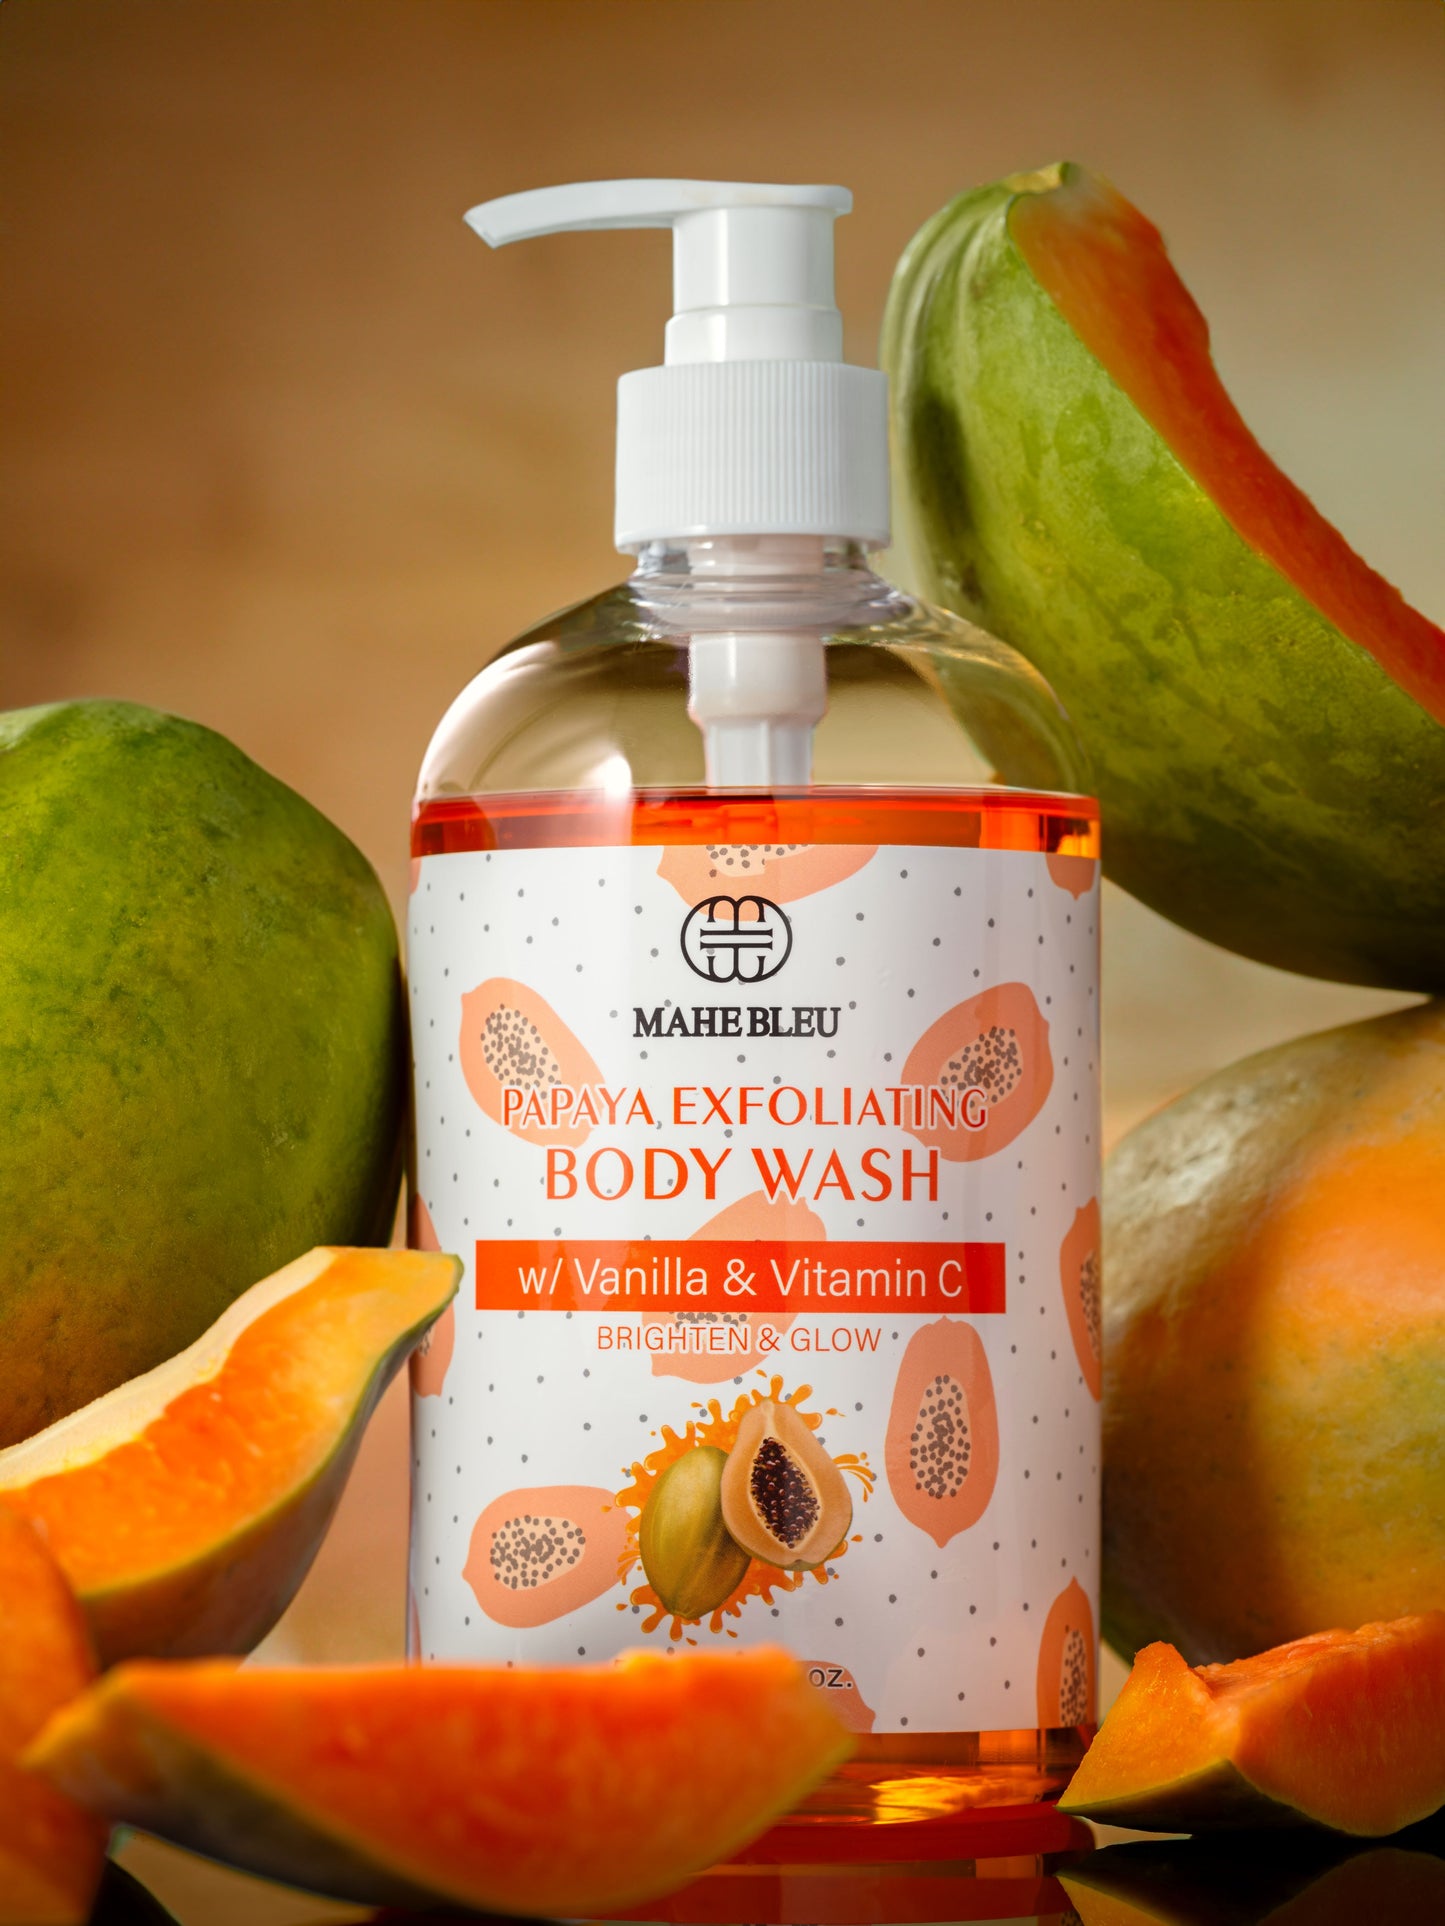 Papaya Exfoliating Body Wash w/ Vanilla & Vitamin C - Brighten & GLOW